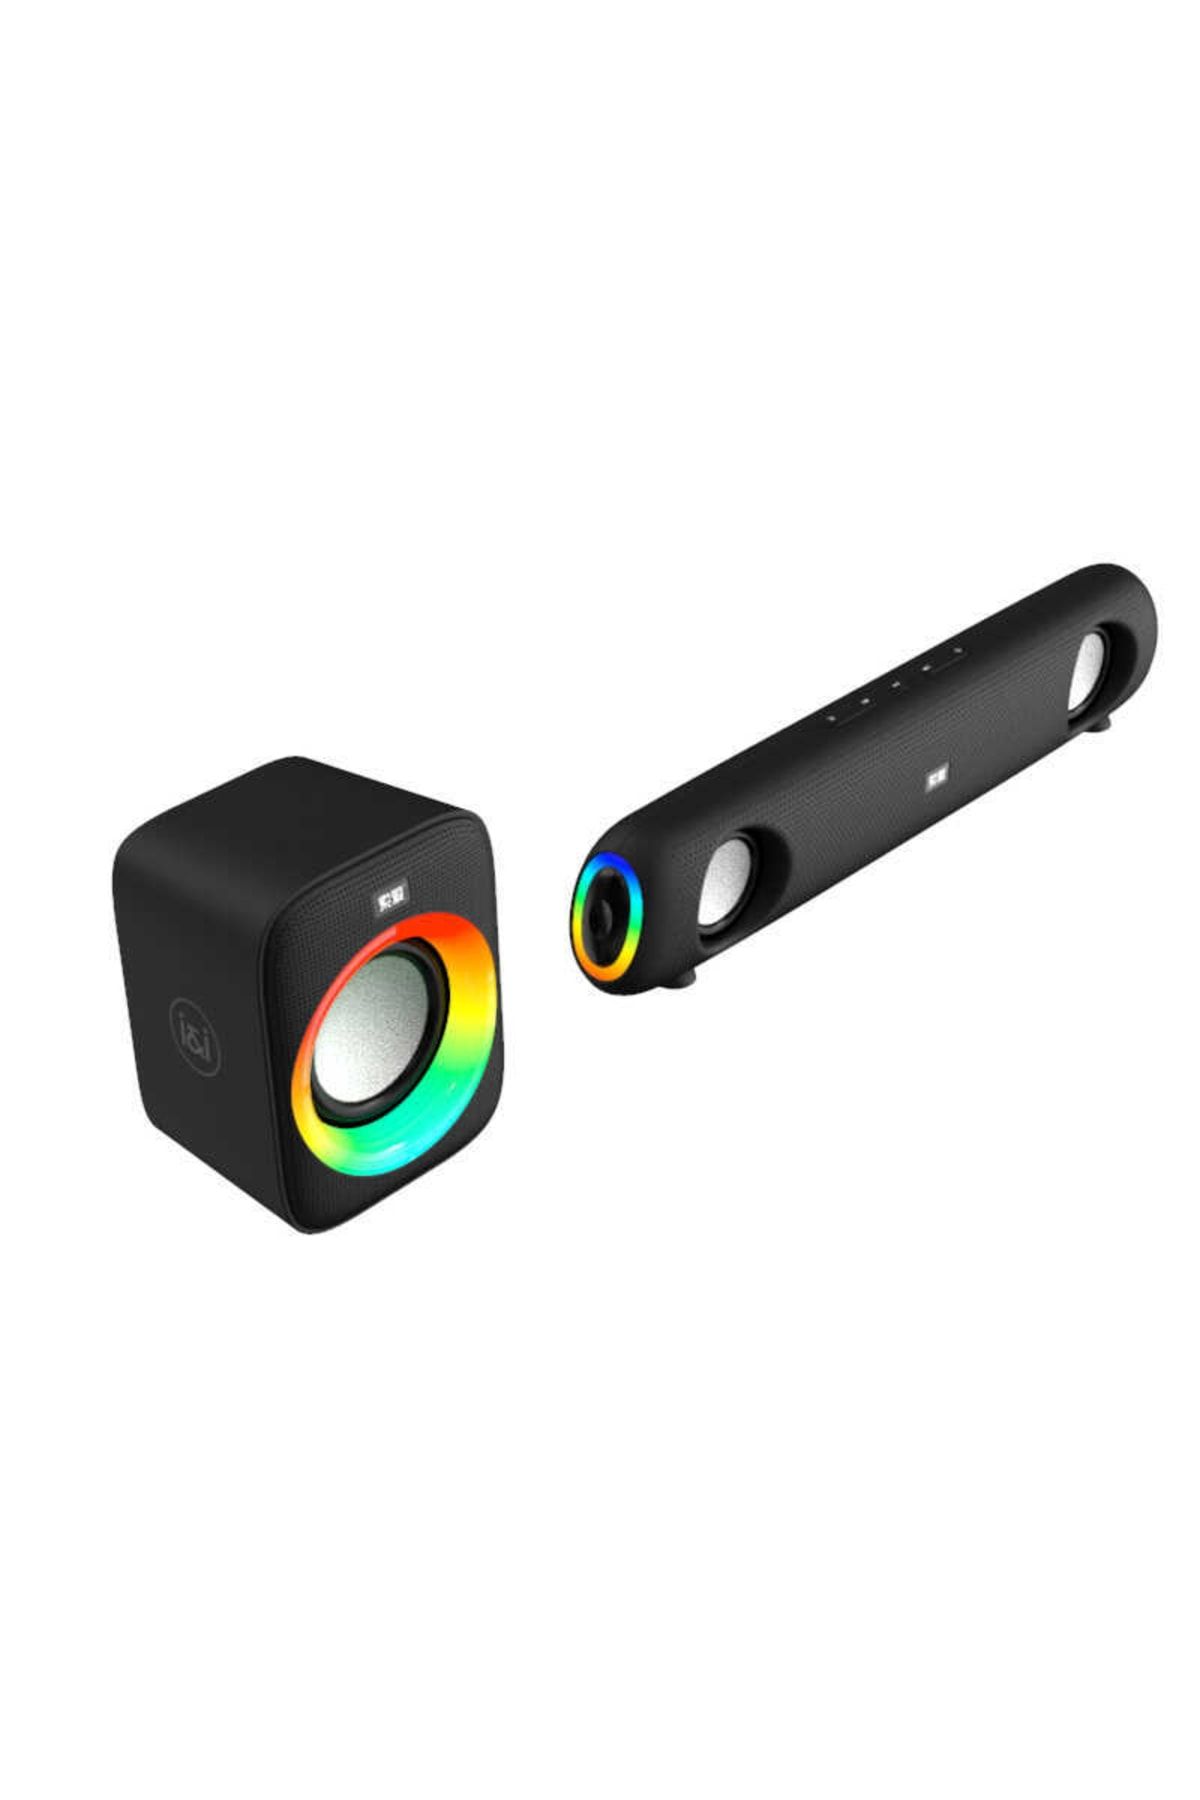 Soaiy Sh11 Taşınabilir Kablosuz Bluetooth Speaker Hoparlör - Renkli Işıklı Ses Bombası - Usb & Aux